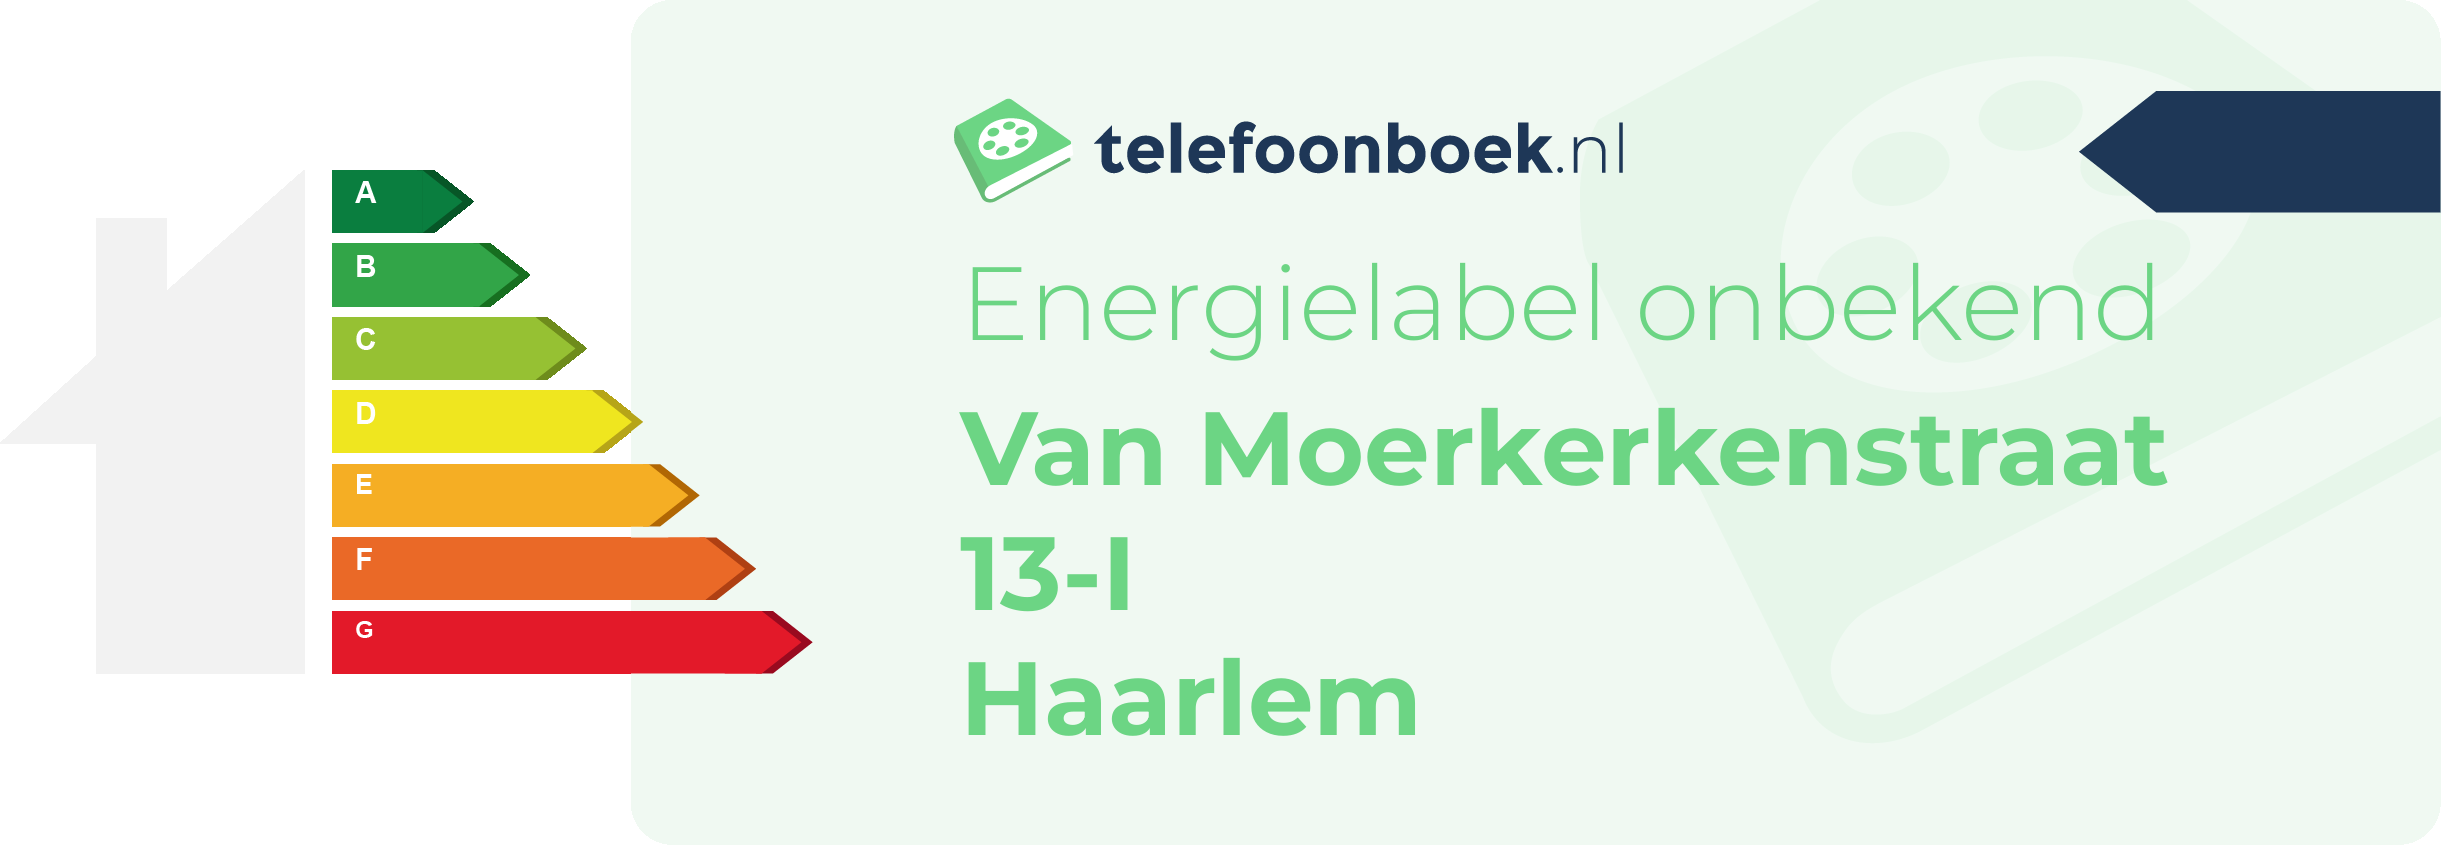 Energielabel Van Moerkerkenstraat 13-I Haarlem